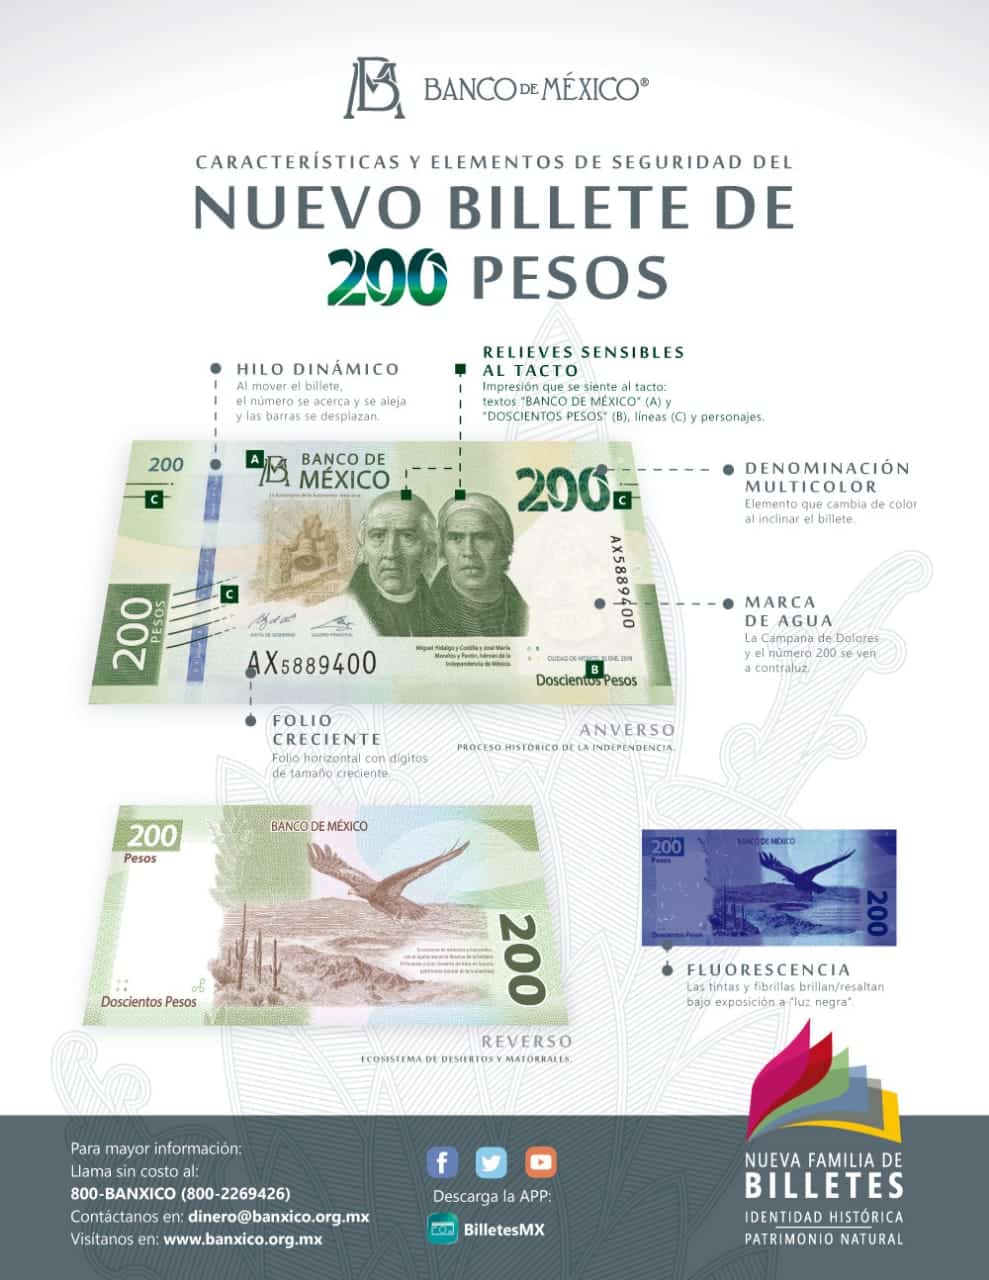 Elementos de seguridad del nuevo billete de 200 pesos